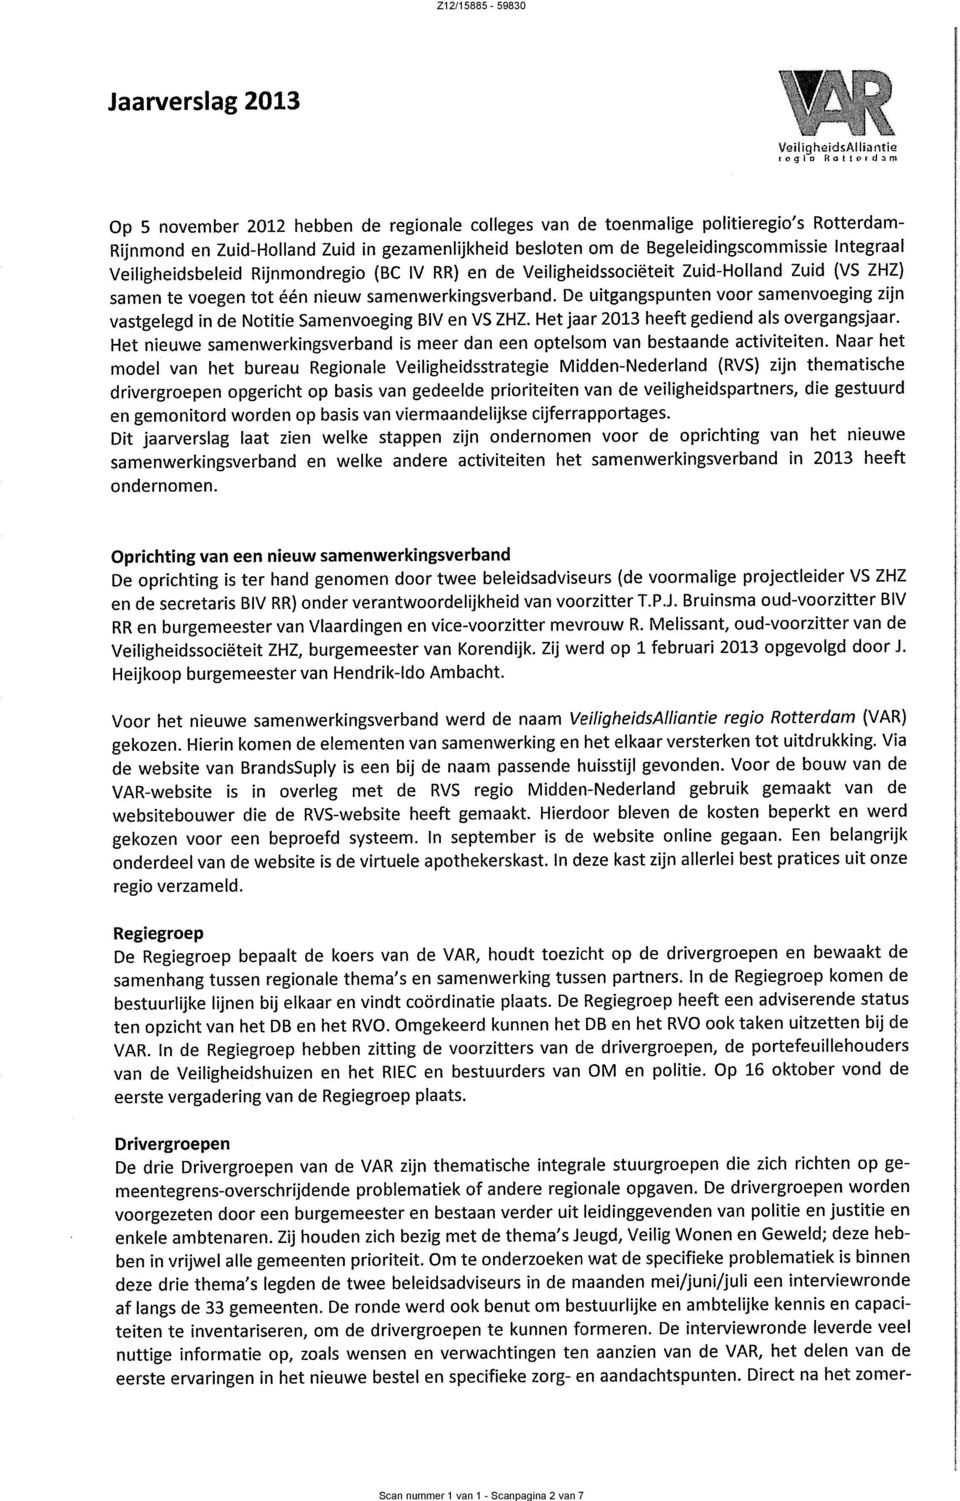 Integraal veiligheidsbeleid Rijnmondregio (Bc IV RR) en de Veiligheidssociëteit Zuid-Holland Zuid (VS ZHZ) samen te voegen tot één nieuw samenwerkingsverband.